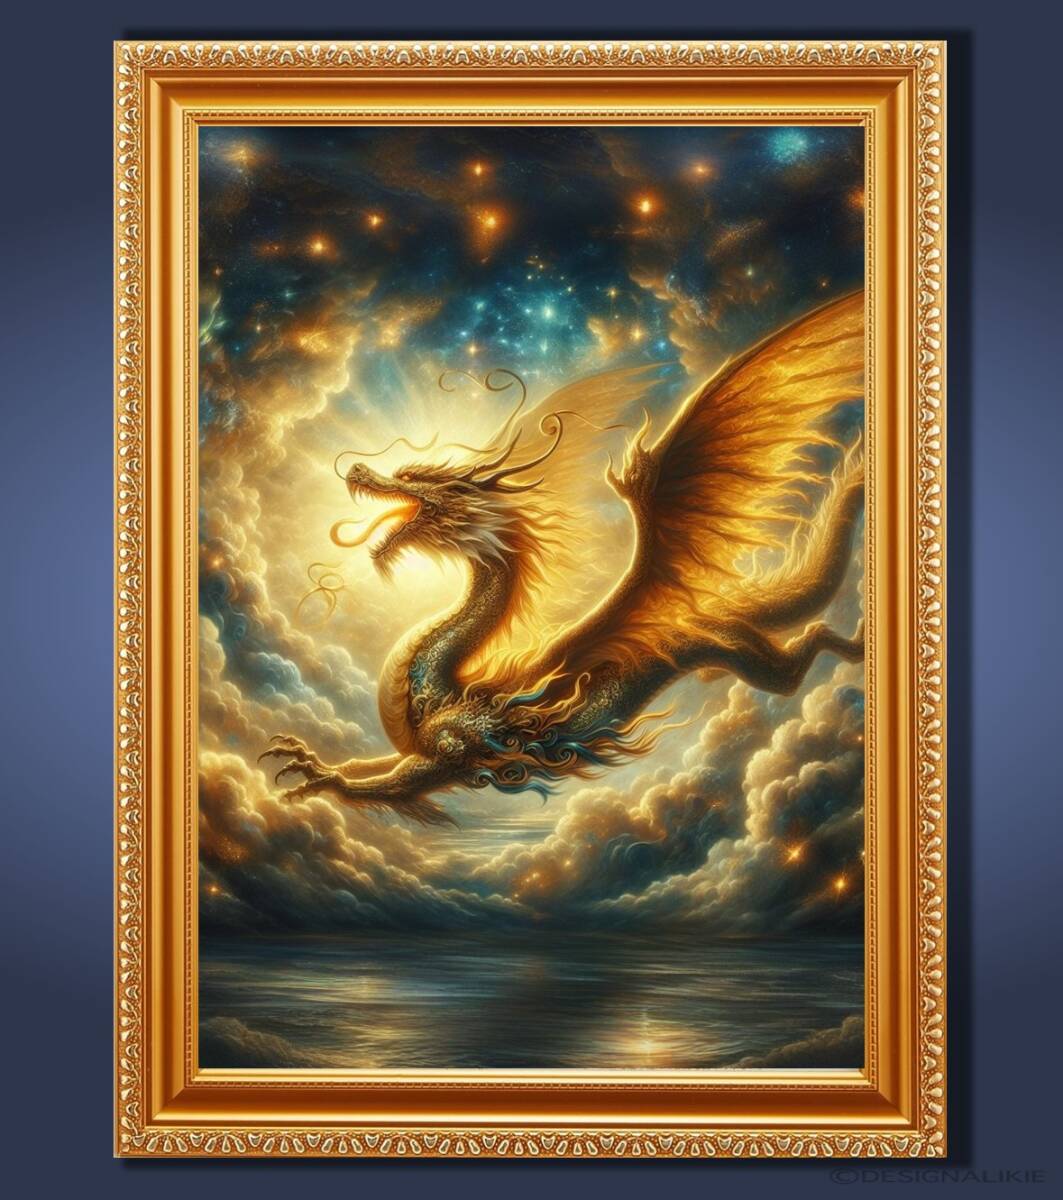 गोल्डन ड्रैगन जो धन में सौभाग्य लाता है, संपत्ति, और कैरियर फ़्रेमयुक्त ग्राफ़िक और आध्यात्मिक कला, कलाकृति, चित्रकारी, अन्य